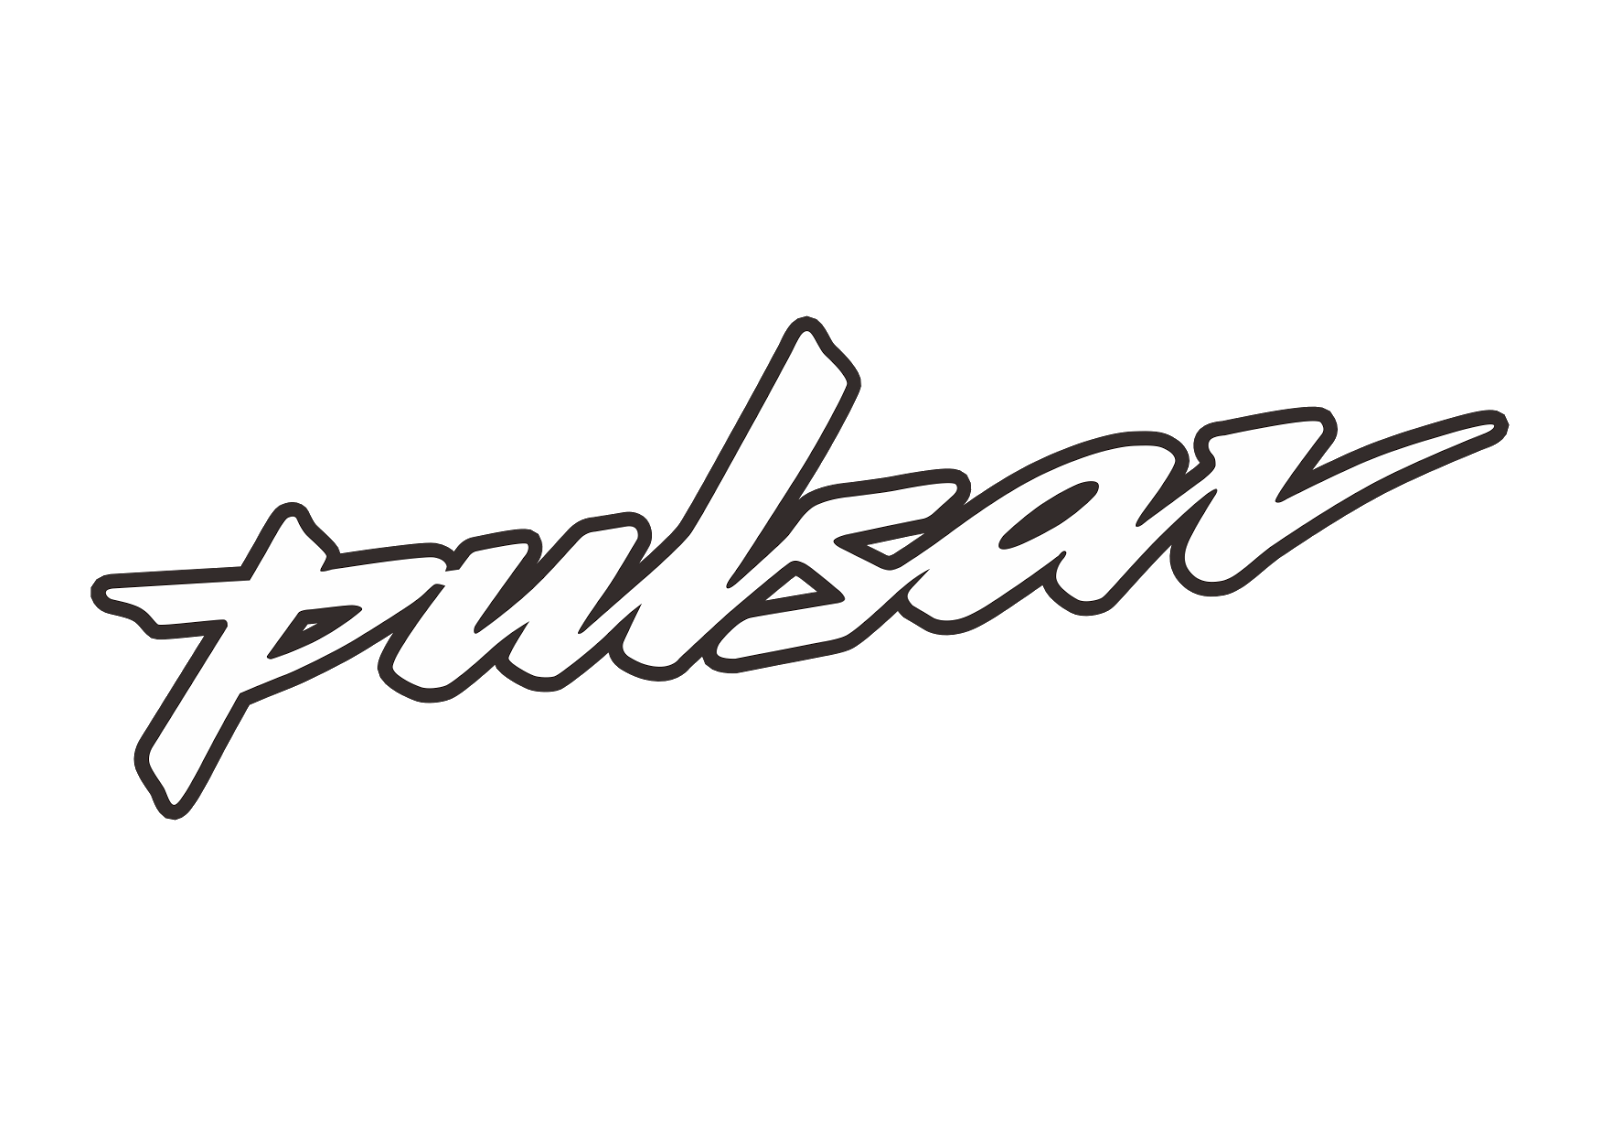 Pulsar 200 NS logo vector photo - 1